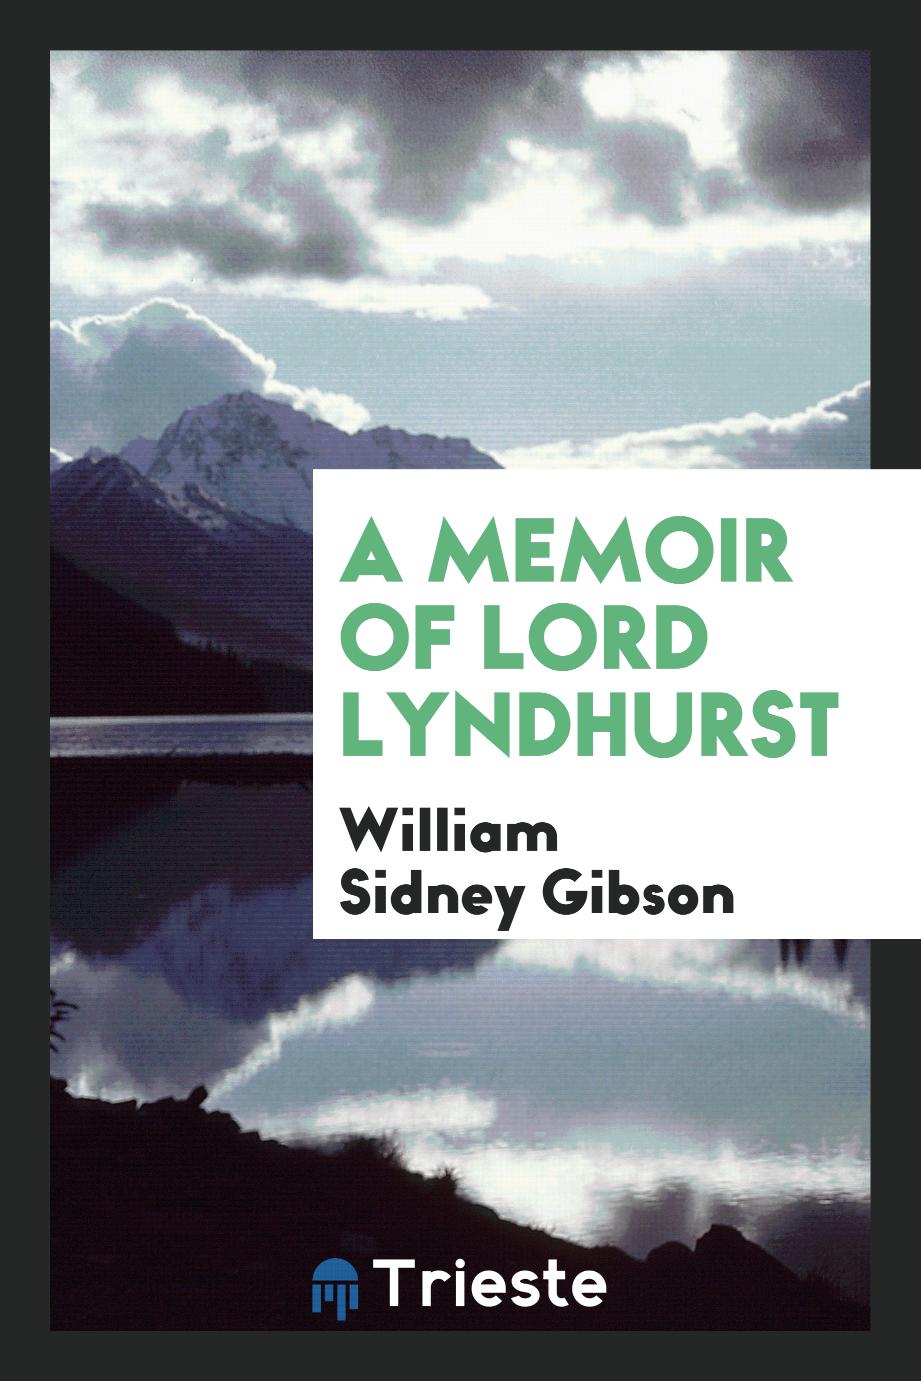 A memoir of lord Lyndhurst